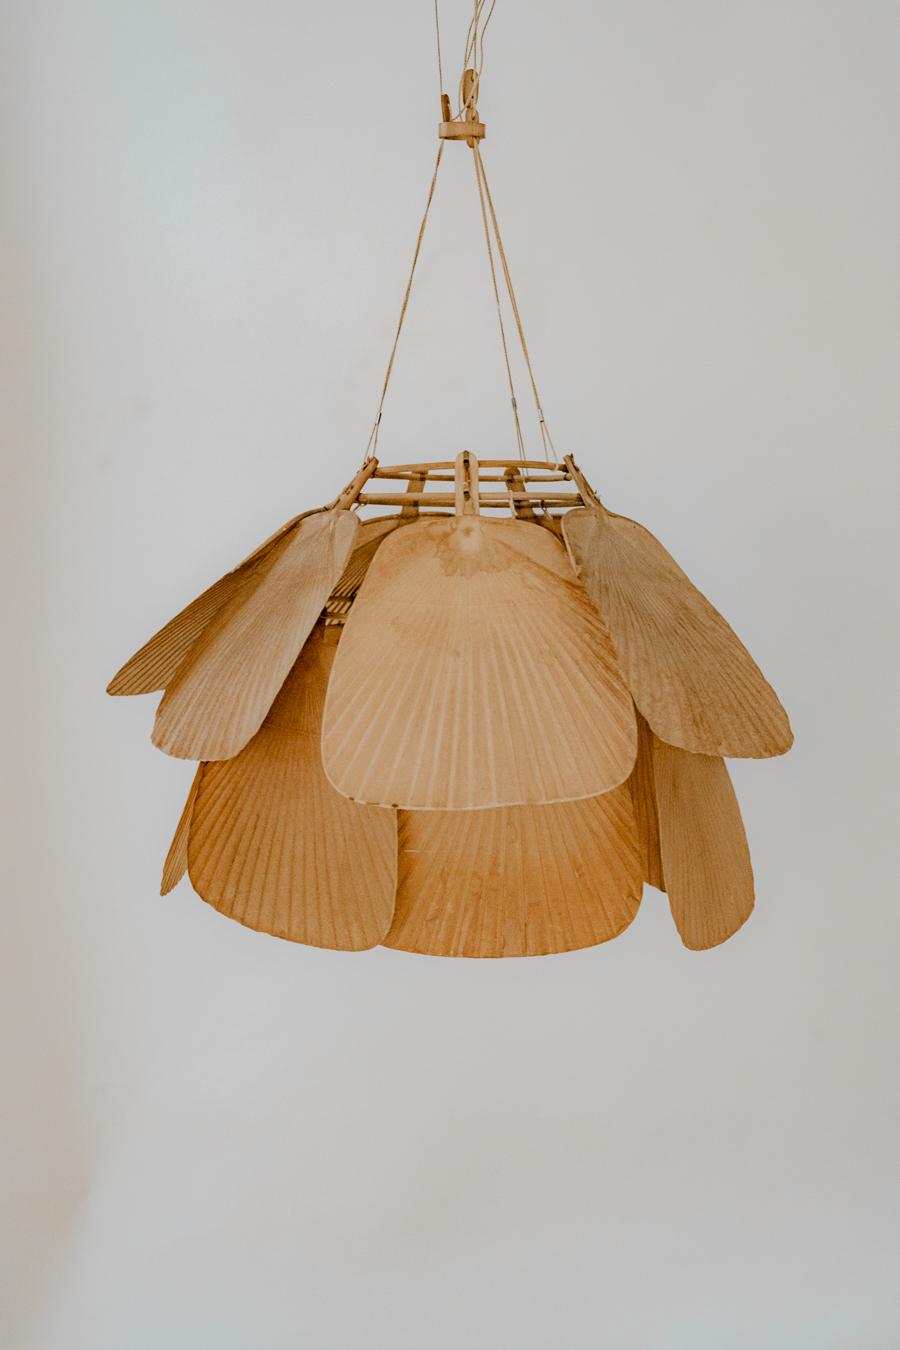 La lámpara colgante Uchiwa, diseñada por Ingo Maurer para Design M, presenta una cautivadora fusión de tradición y vanguardia, constituyendo un destacado ejemplo de exploración artística en la década de 1970. Elaborado con catorce paneles de bambú y